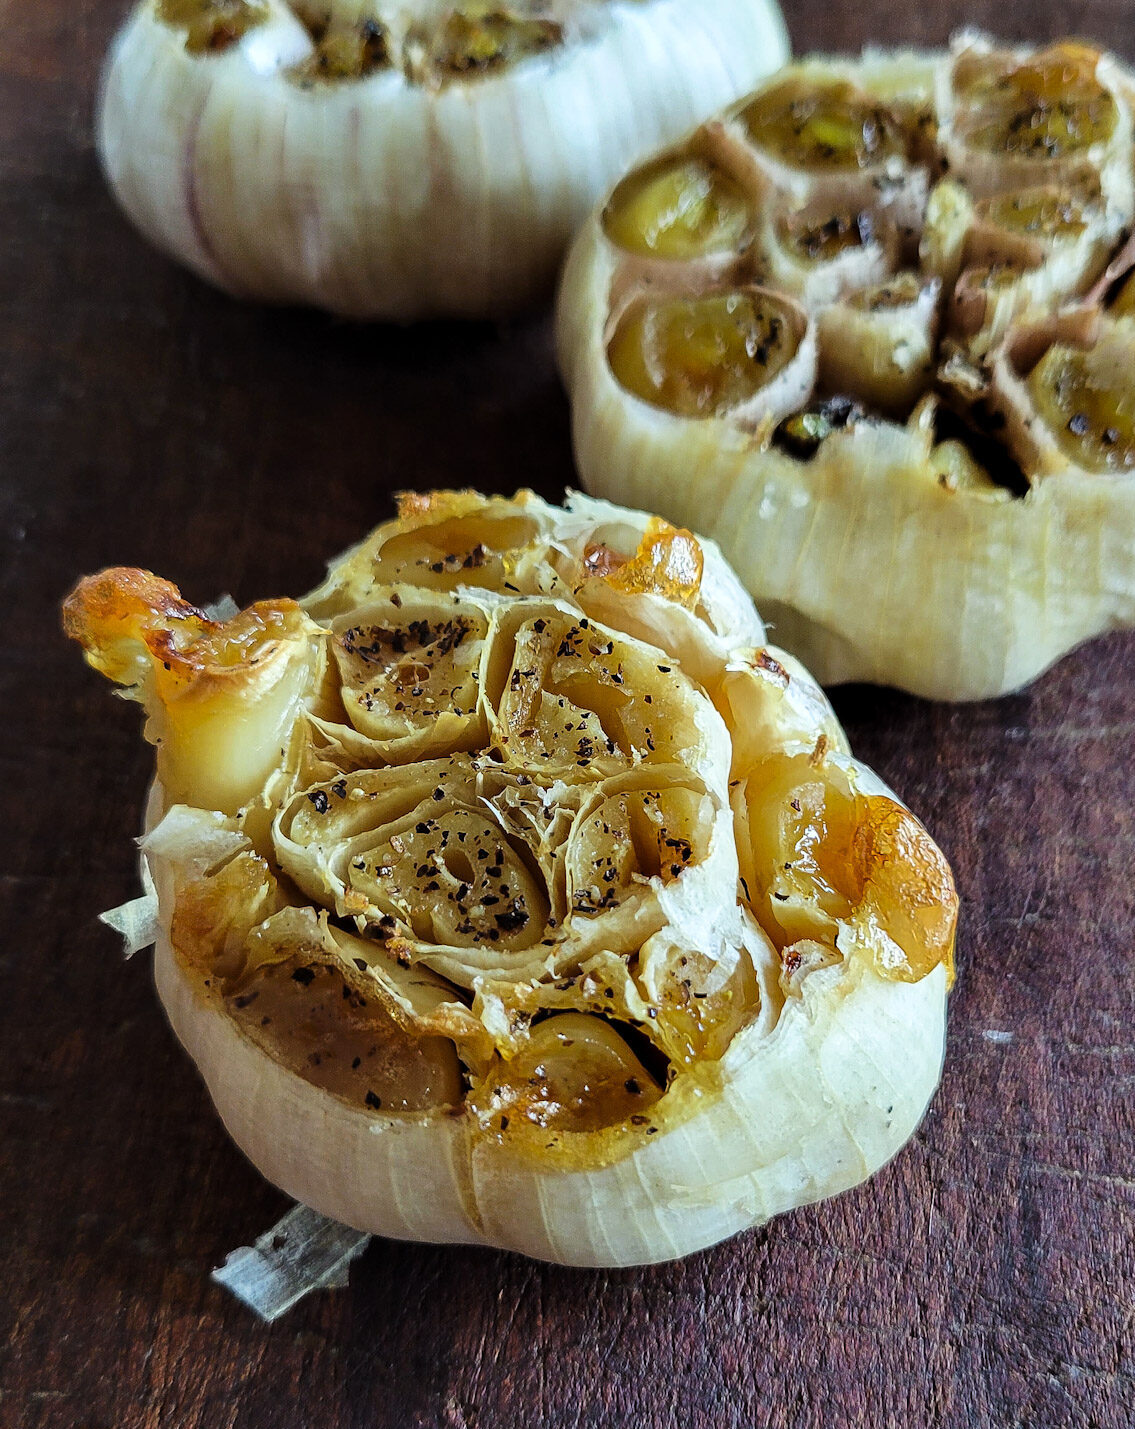 Three heads of creamy roasted garlic sitting on a cutting board.